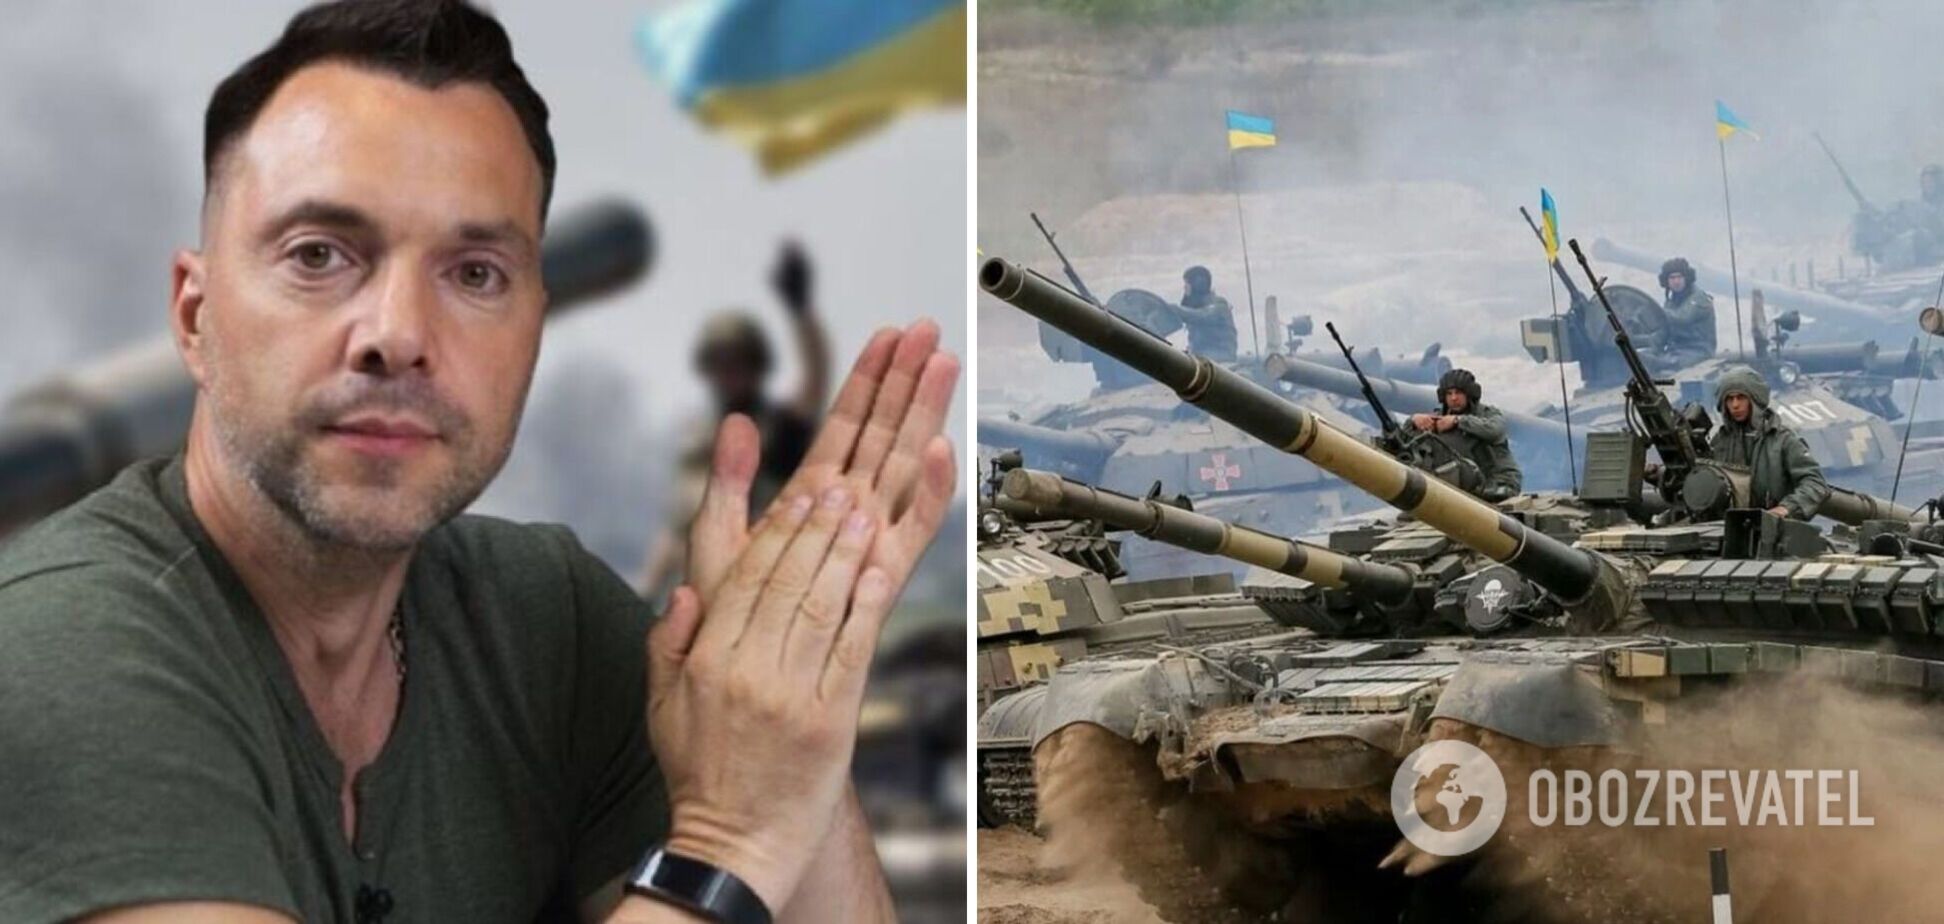 Арестович рассказал, когда украинские власти узнали, что Россия готовит вторжение в Украину